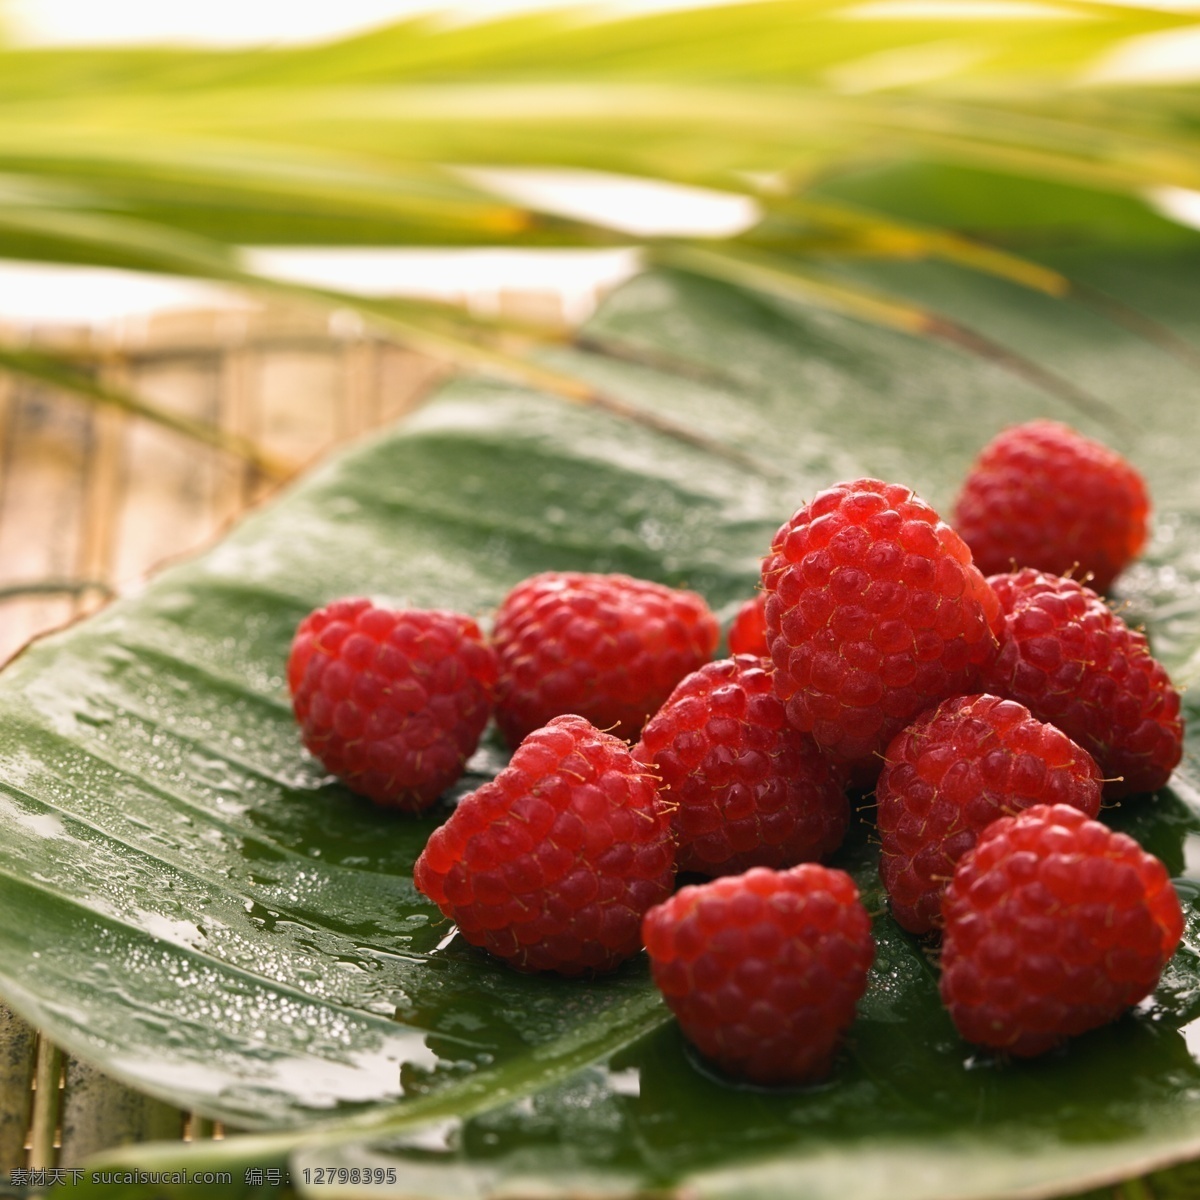 餐饮美食 草莓 健康 冷饮 美食 食物原料 树叶 饮料 水果 叶子 养生 滋补 红色草莓 新鲜 psd源文件 餐饮素材